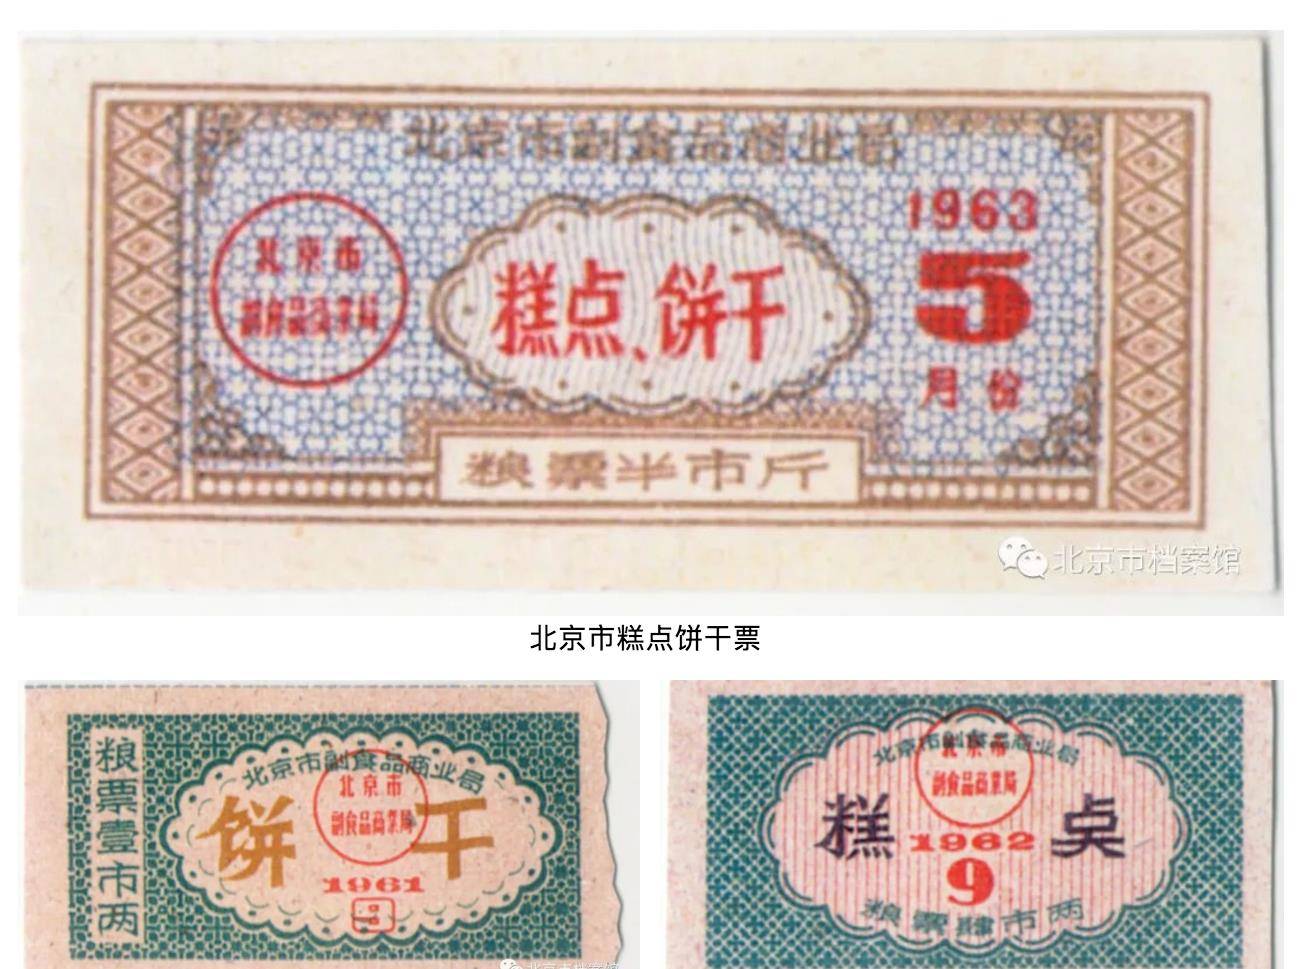 鸡蛋自1958年元月起限量供应,凭《北京市居民副食购货证》每户每月